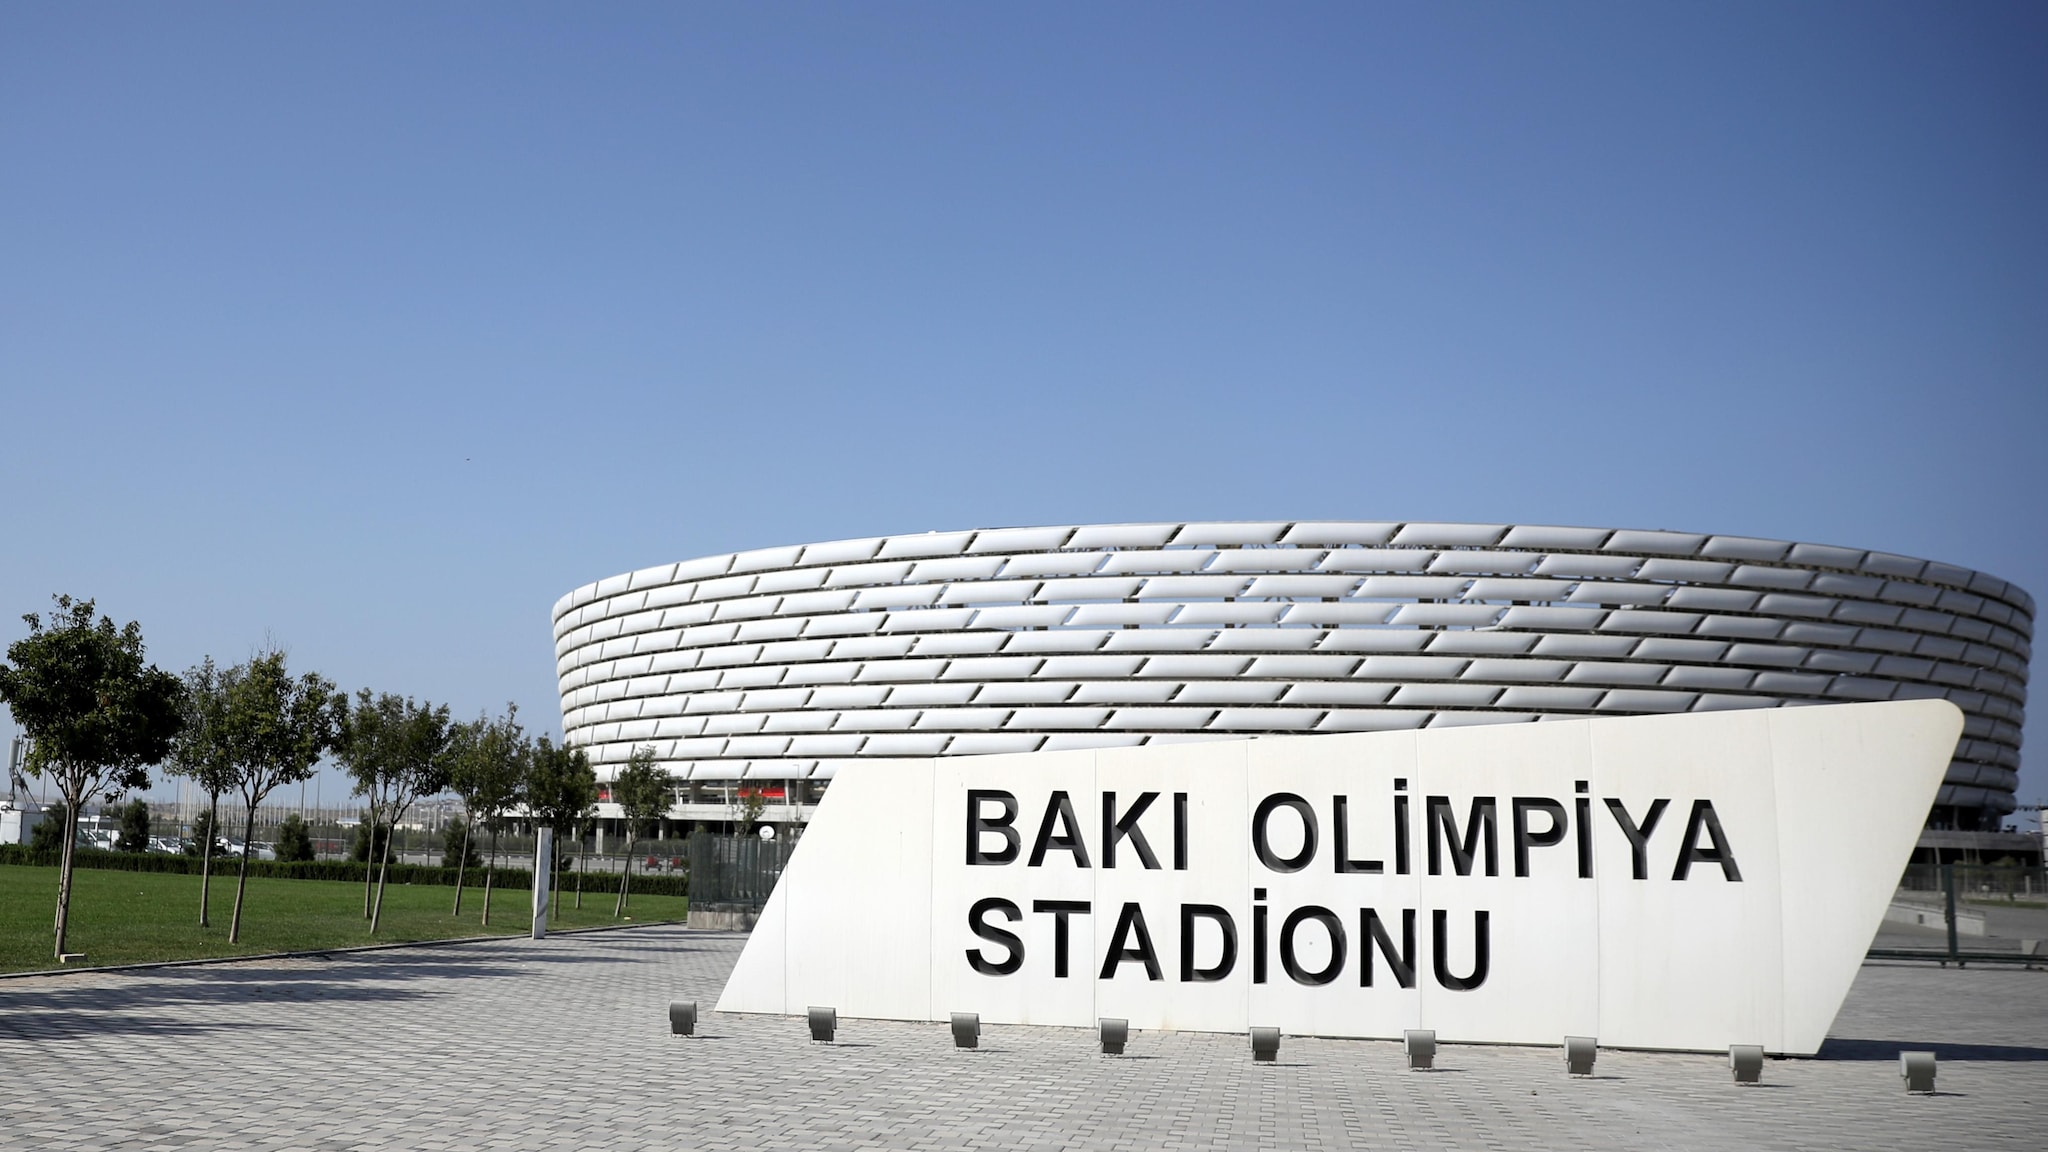 Event guide | Baku | Getting to the stadium | UEFA EURO 2020 | UEFA.com